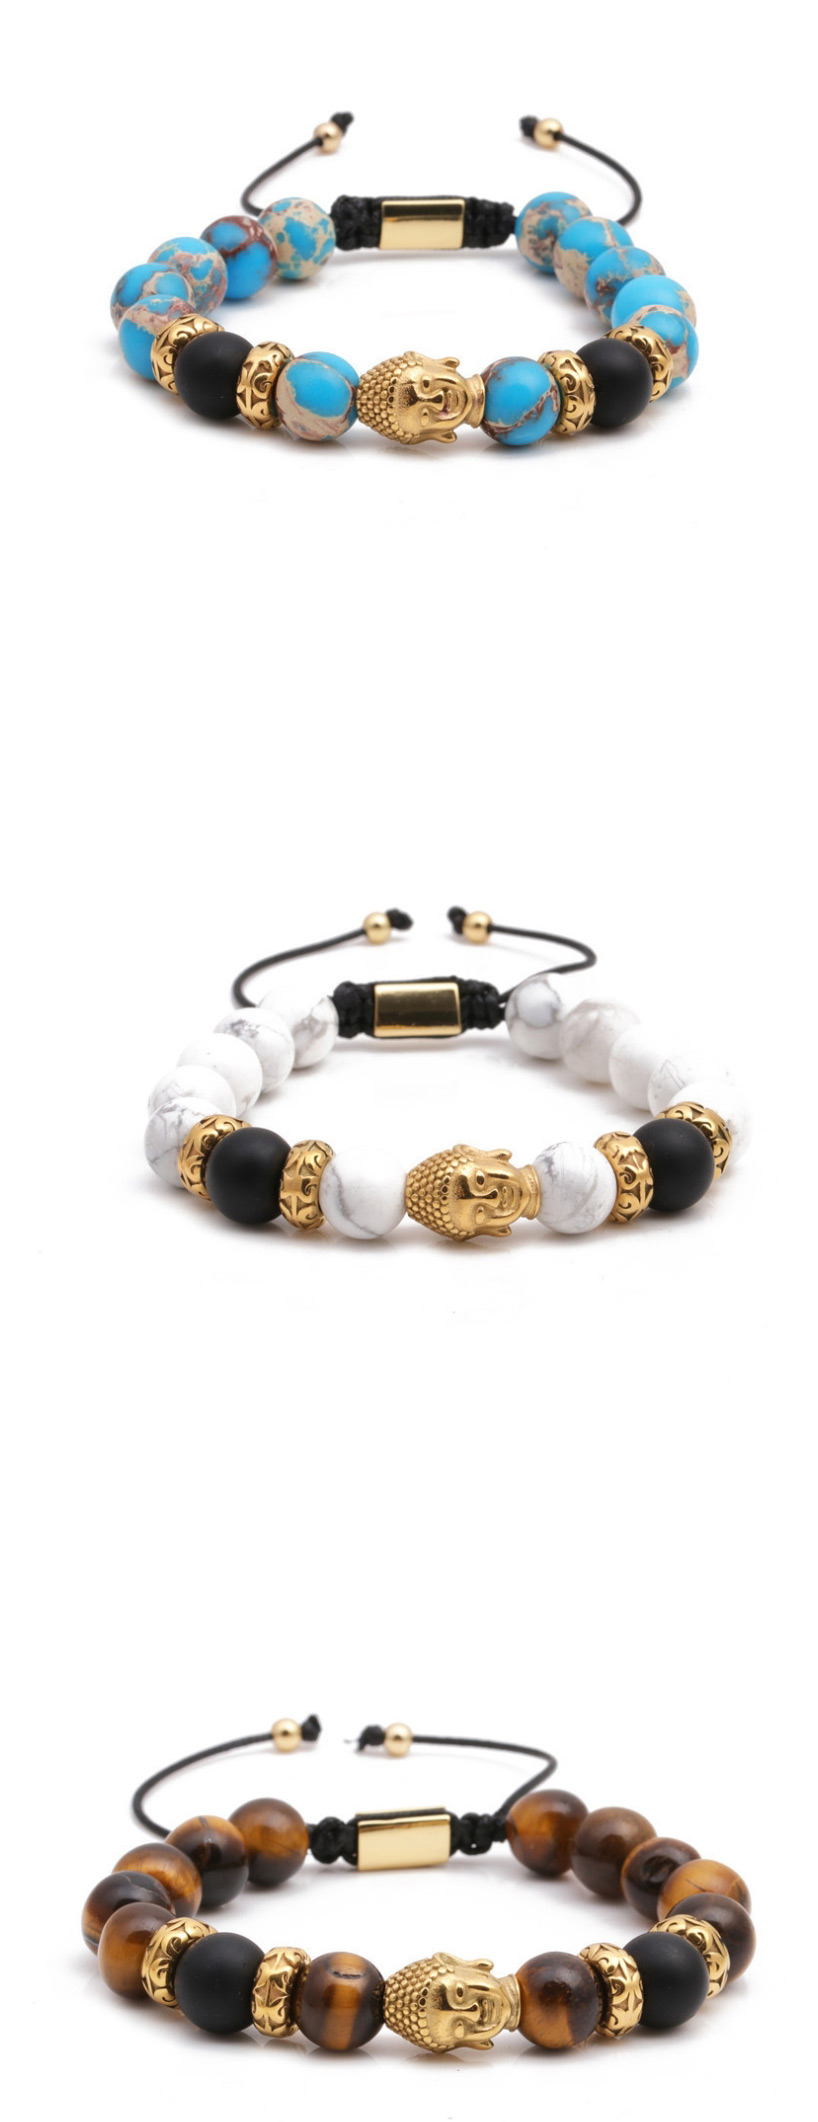 Fashion Golden White Turquoise Stainless Steel Woven Adjustable Buddha Head Bracelet For Men,Bracelets